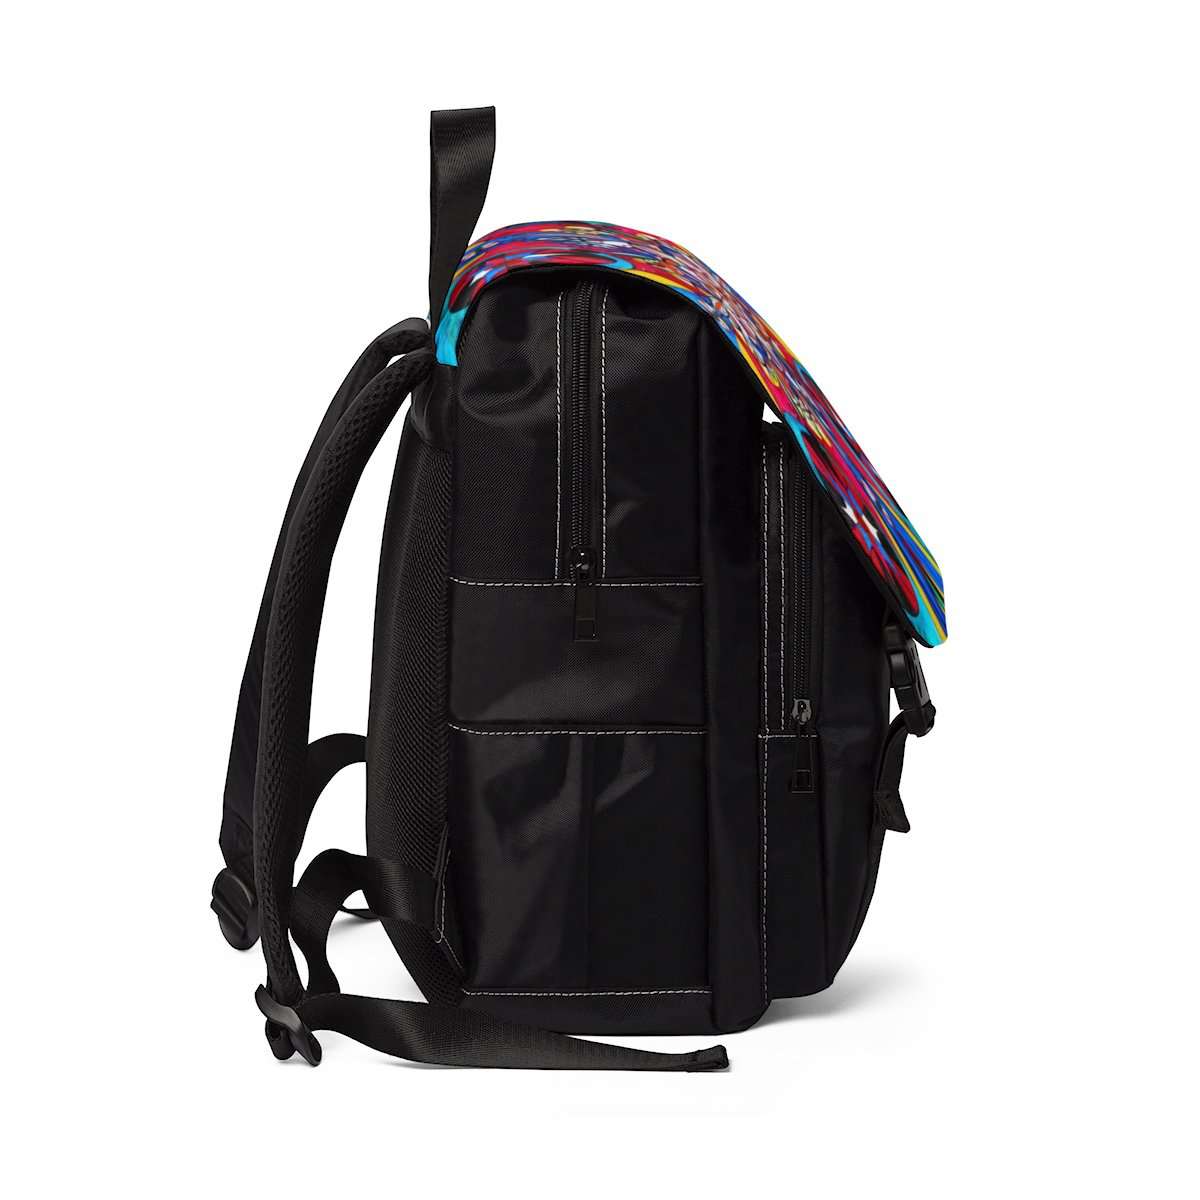 get-your-favorite-origin-of-the-soul-unisex-casual-shoulder-backpack-sale_1.jpg